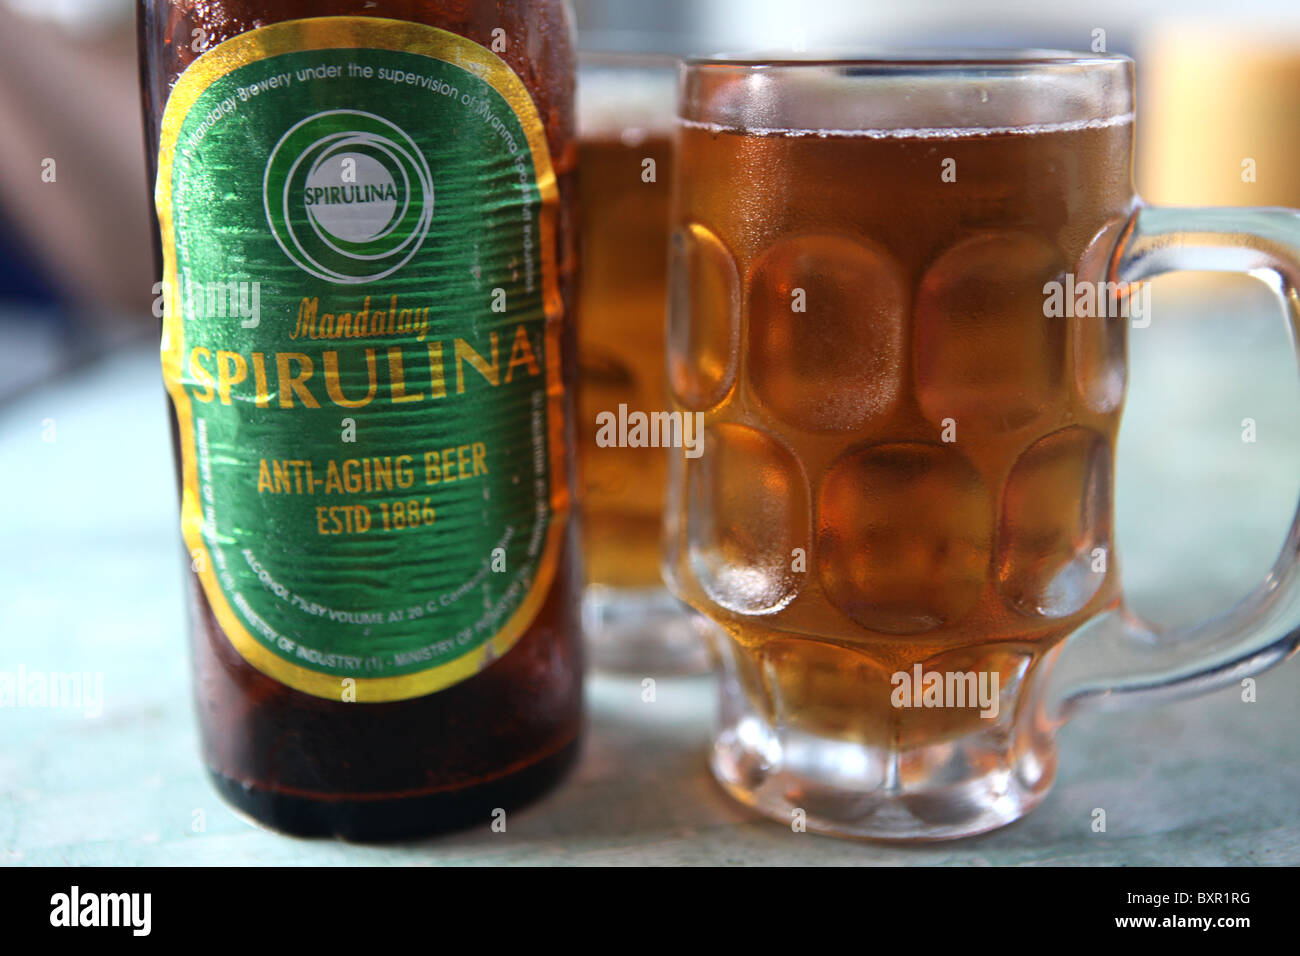 Mandalay Spirulina Anti Ageing Bier, ganz Myanmar oder Burma verkauft, die Spirulina enthält einen gesundheitsfördernden Alge. Stockfoto